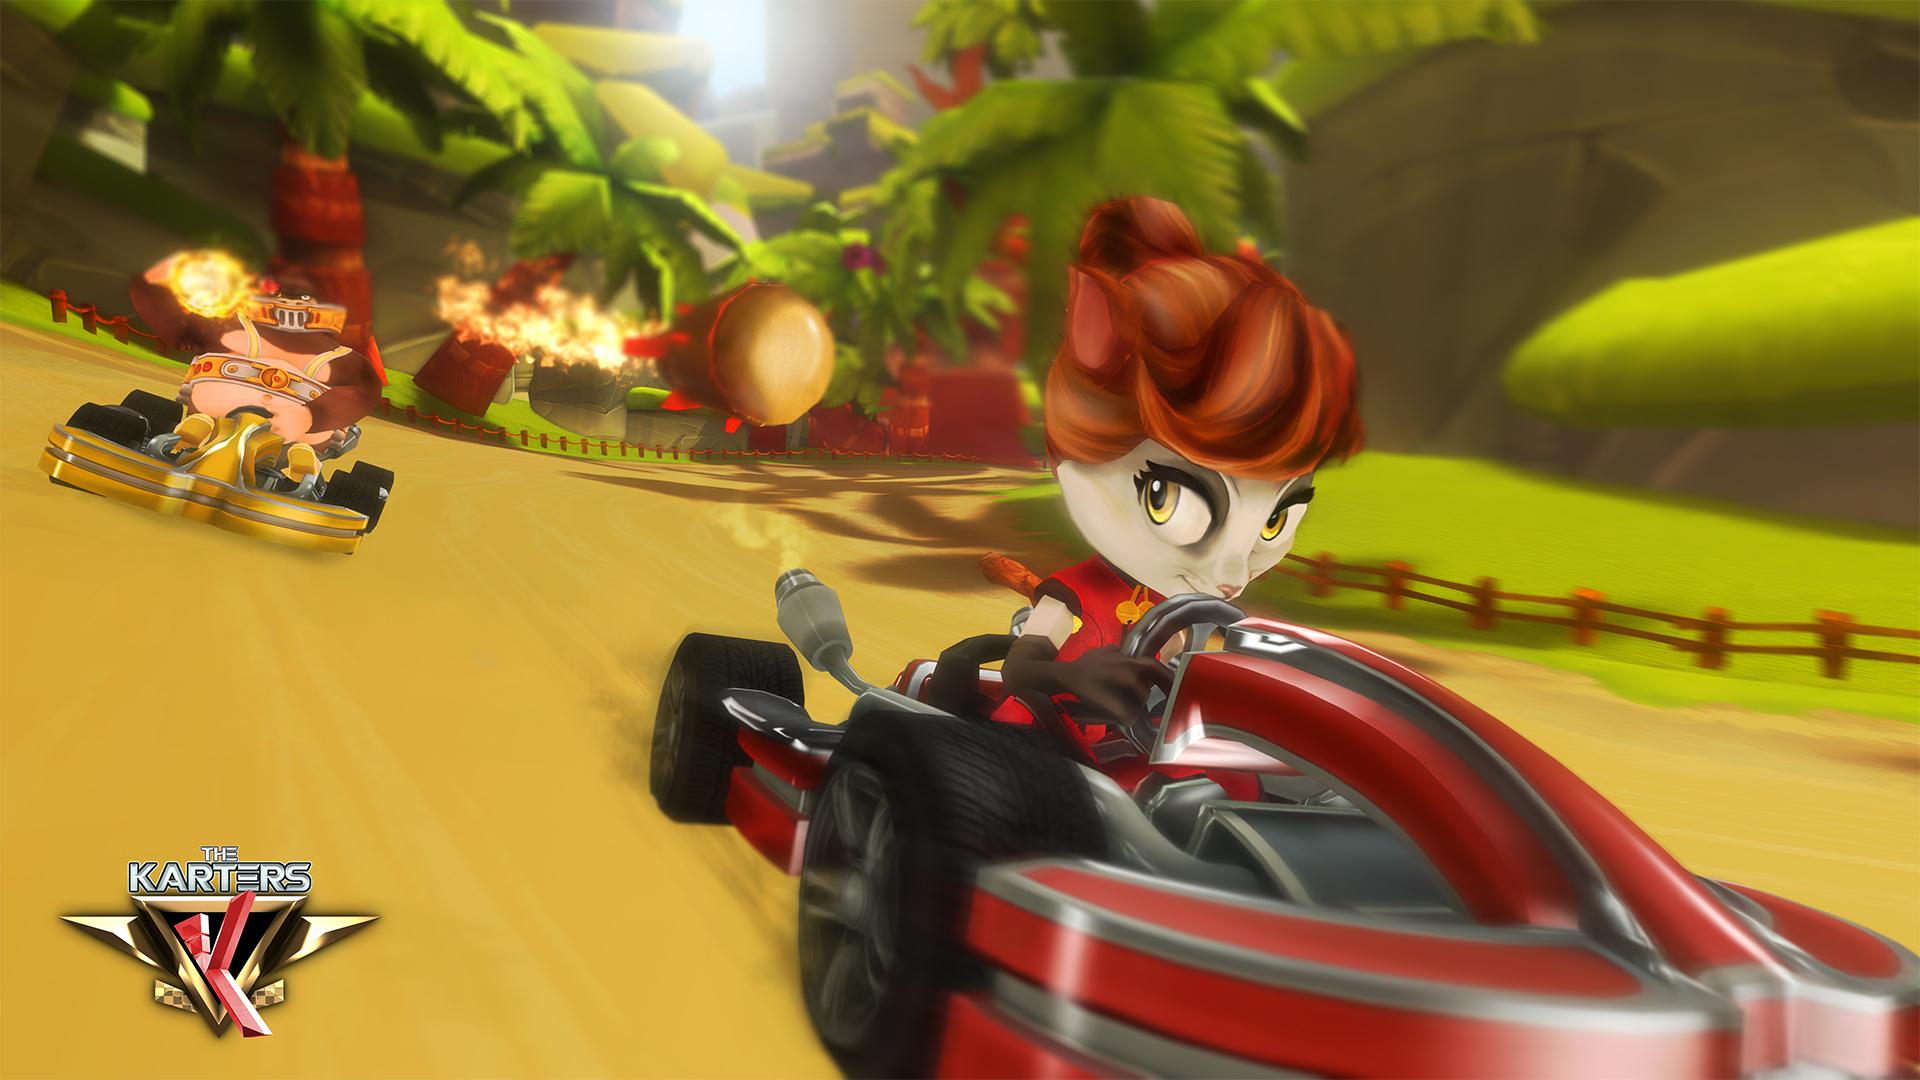 Katowickie studio tworzy grę wyścigową w duchu Crash Team Racing. Poznajcie The Karters!